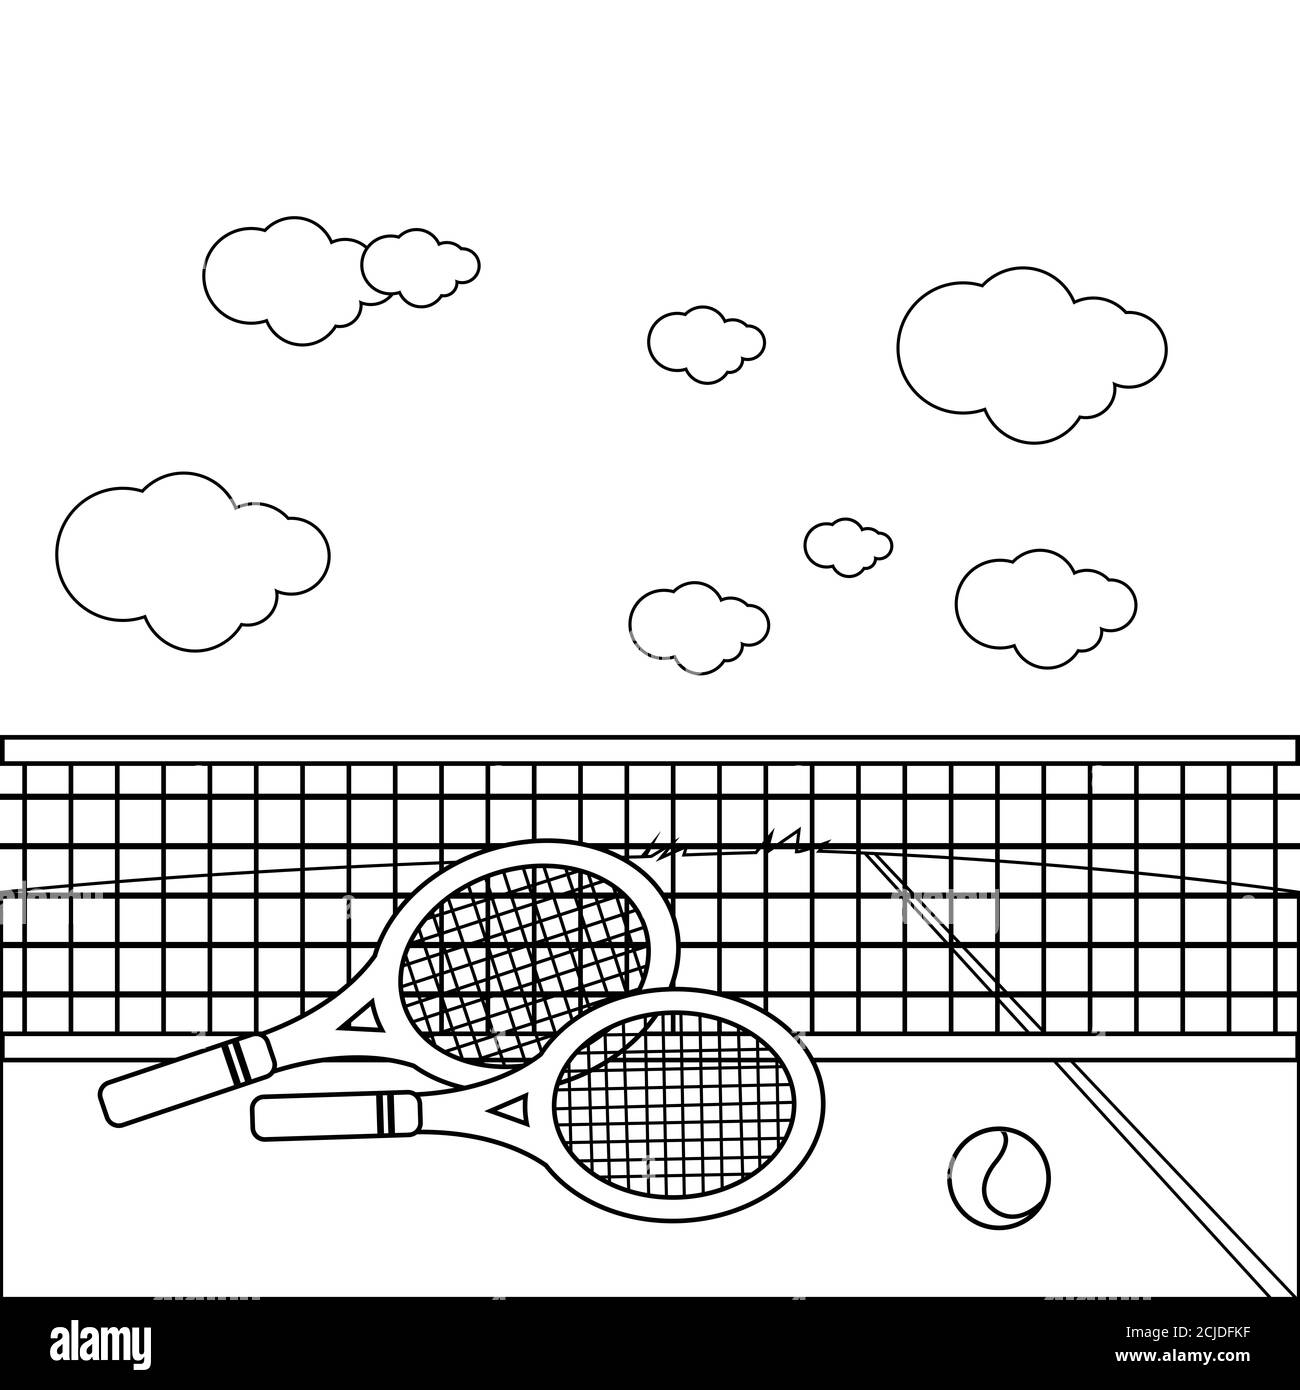 Теннисный корт раскраска